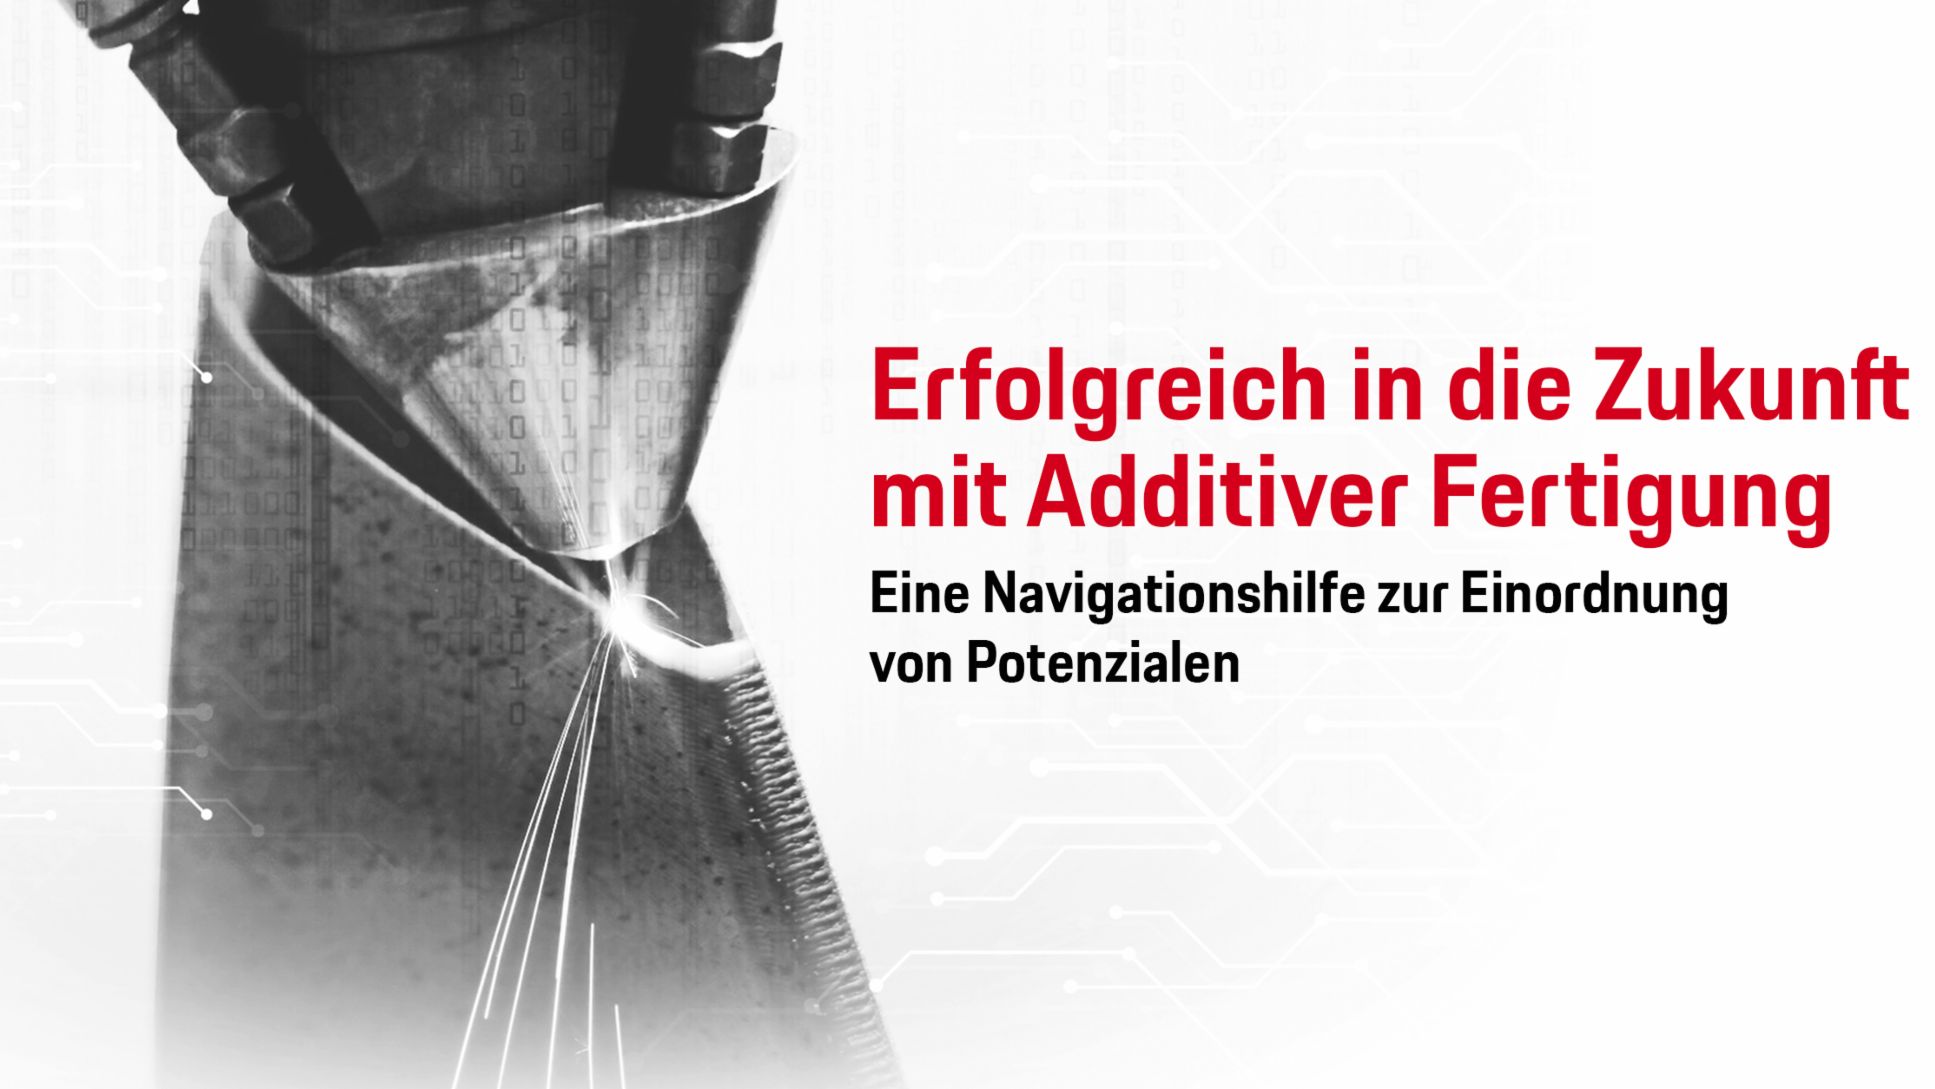 Erfolgreich in die Zukunft mit Additiver Fertigung, 2018, Porsche Consulting GmbH